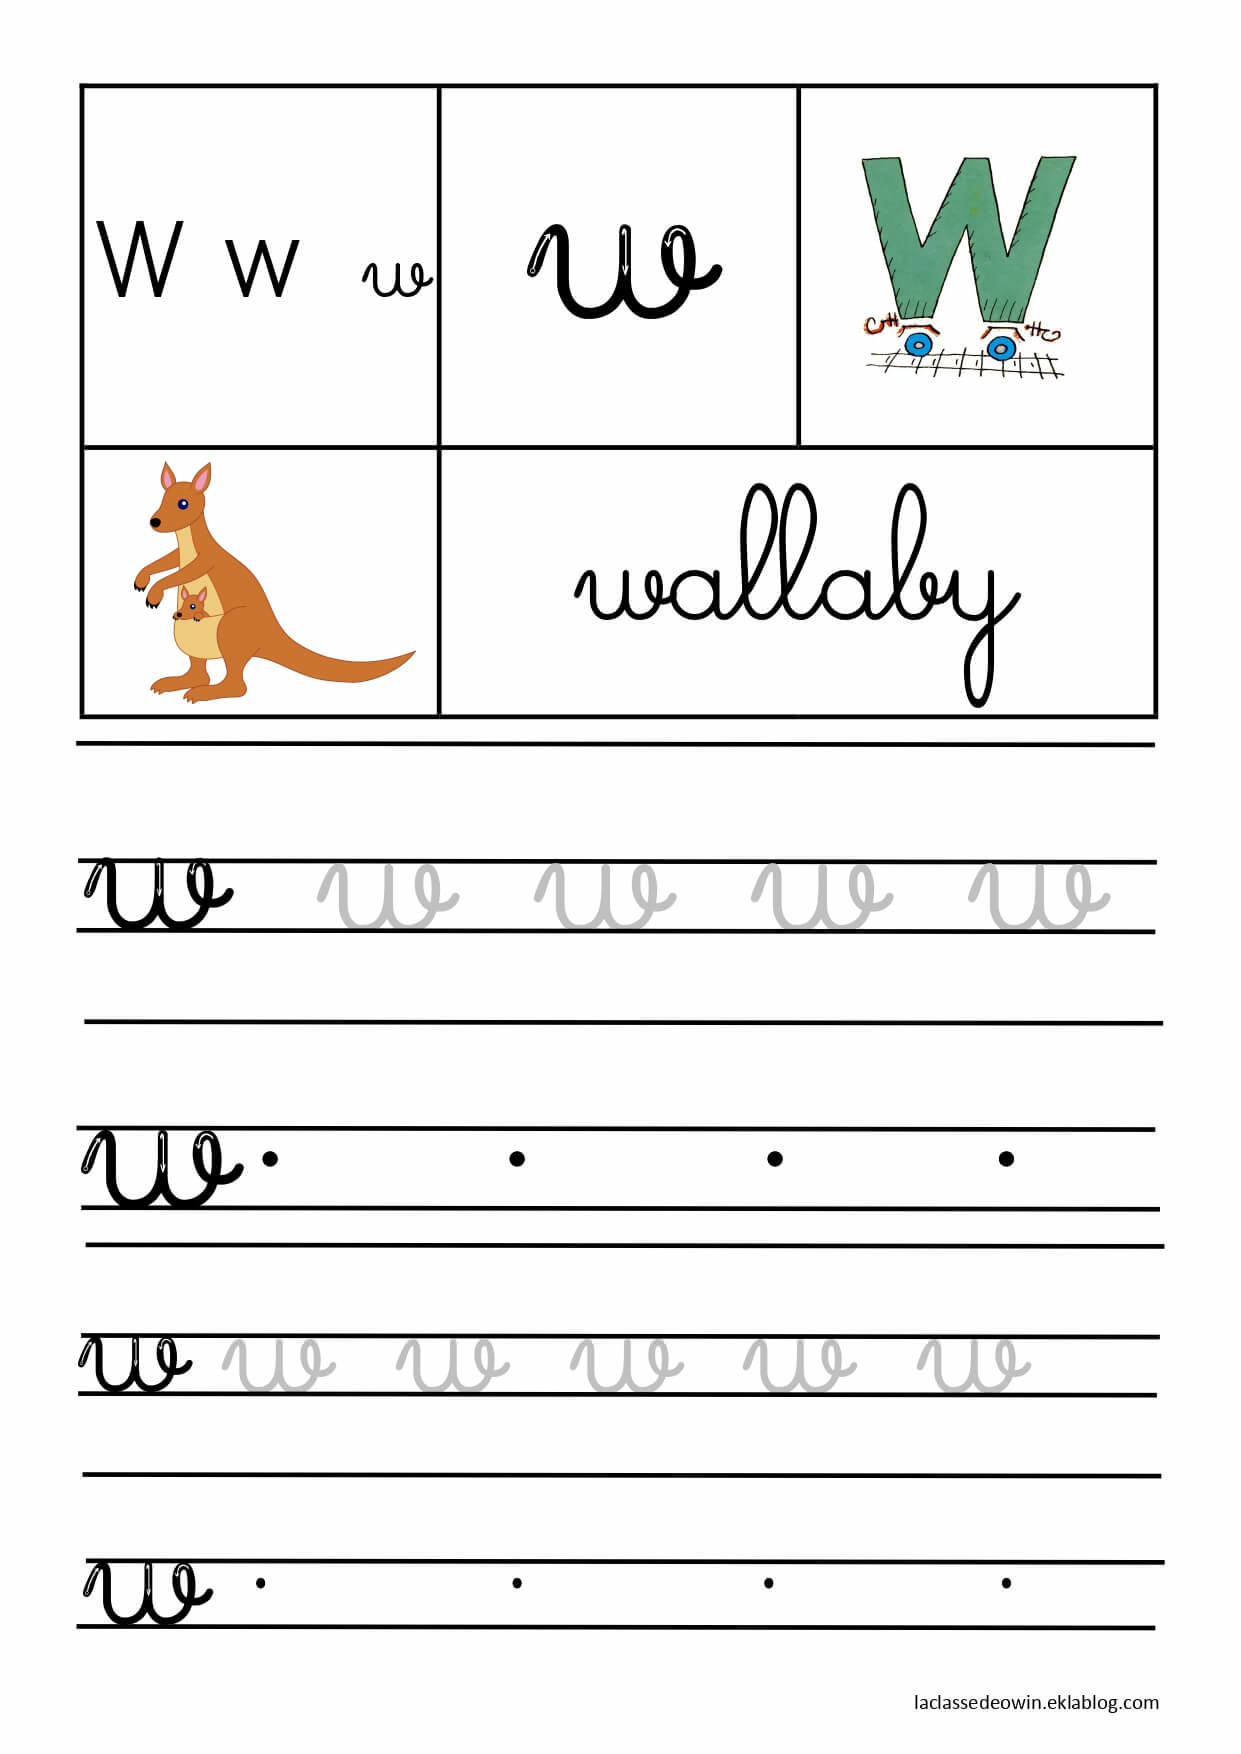   Lettre W pour wallaby, écriture cursive GS 